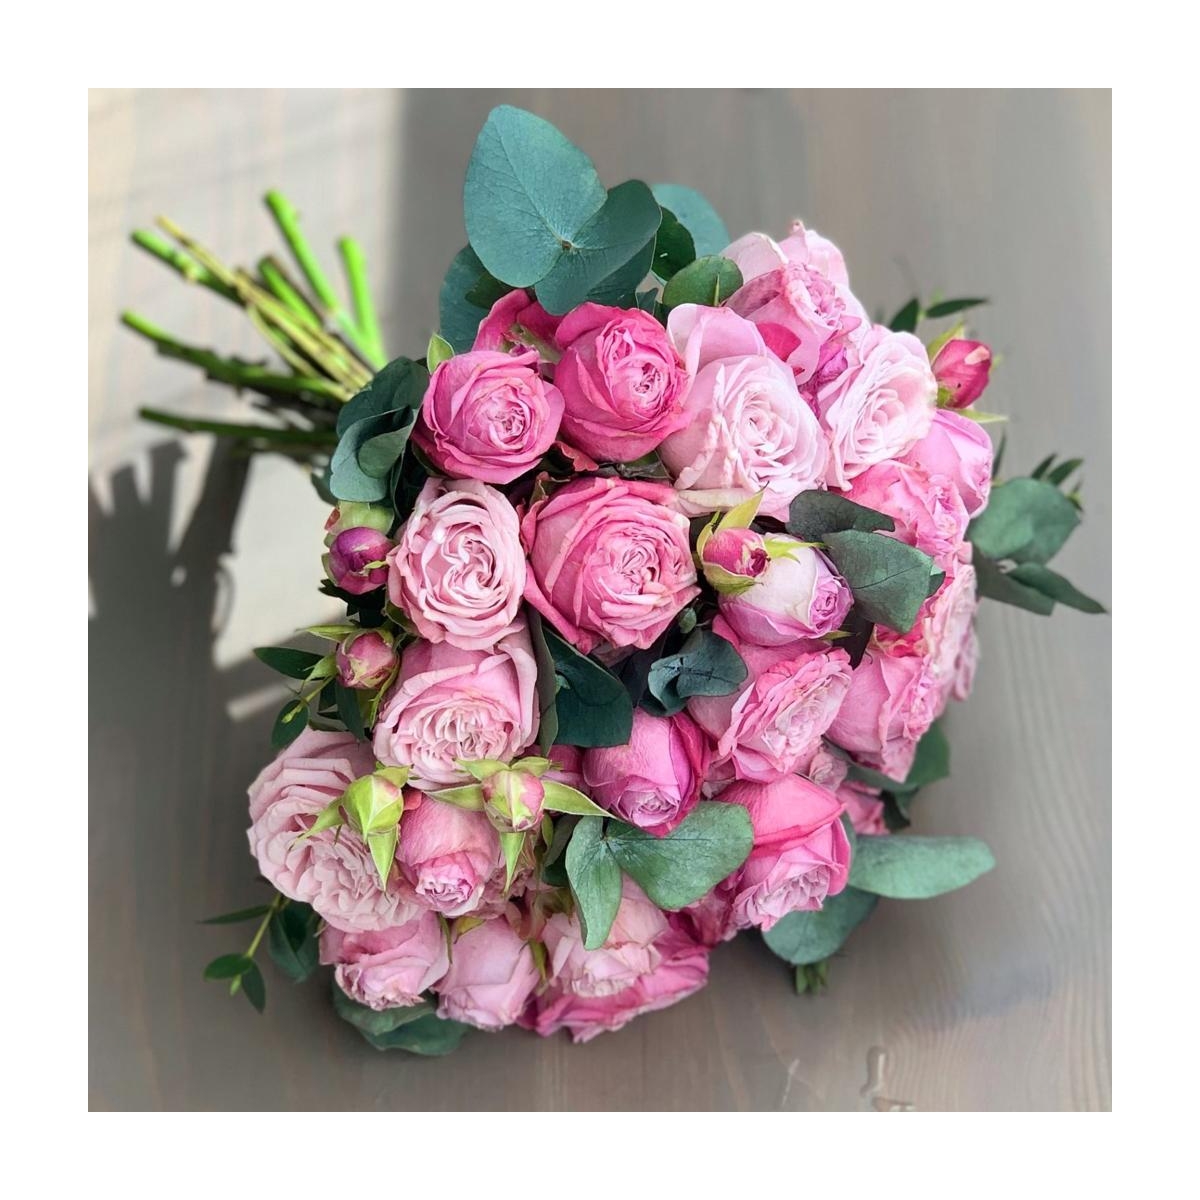 Розовый букет невесты из кустовых роз